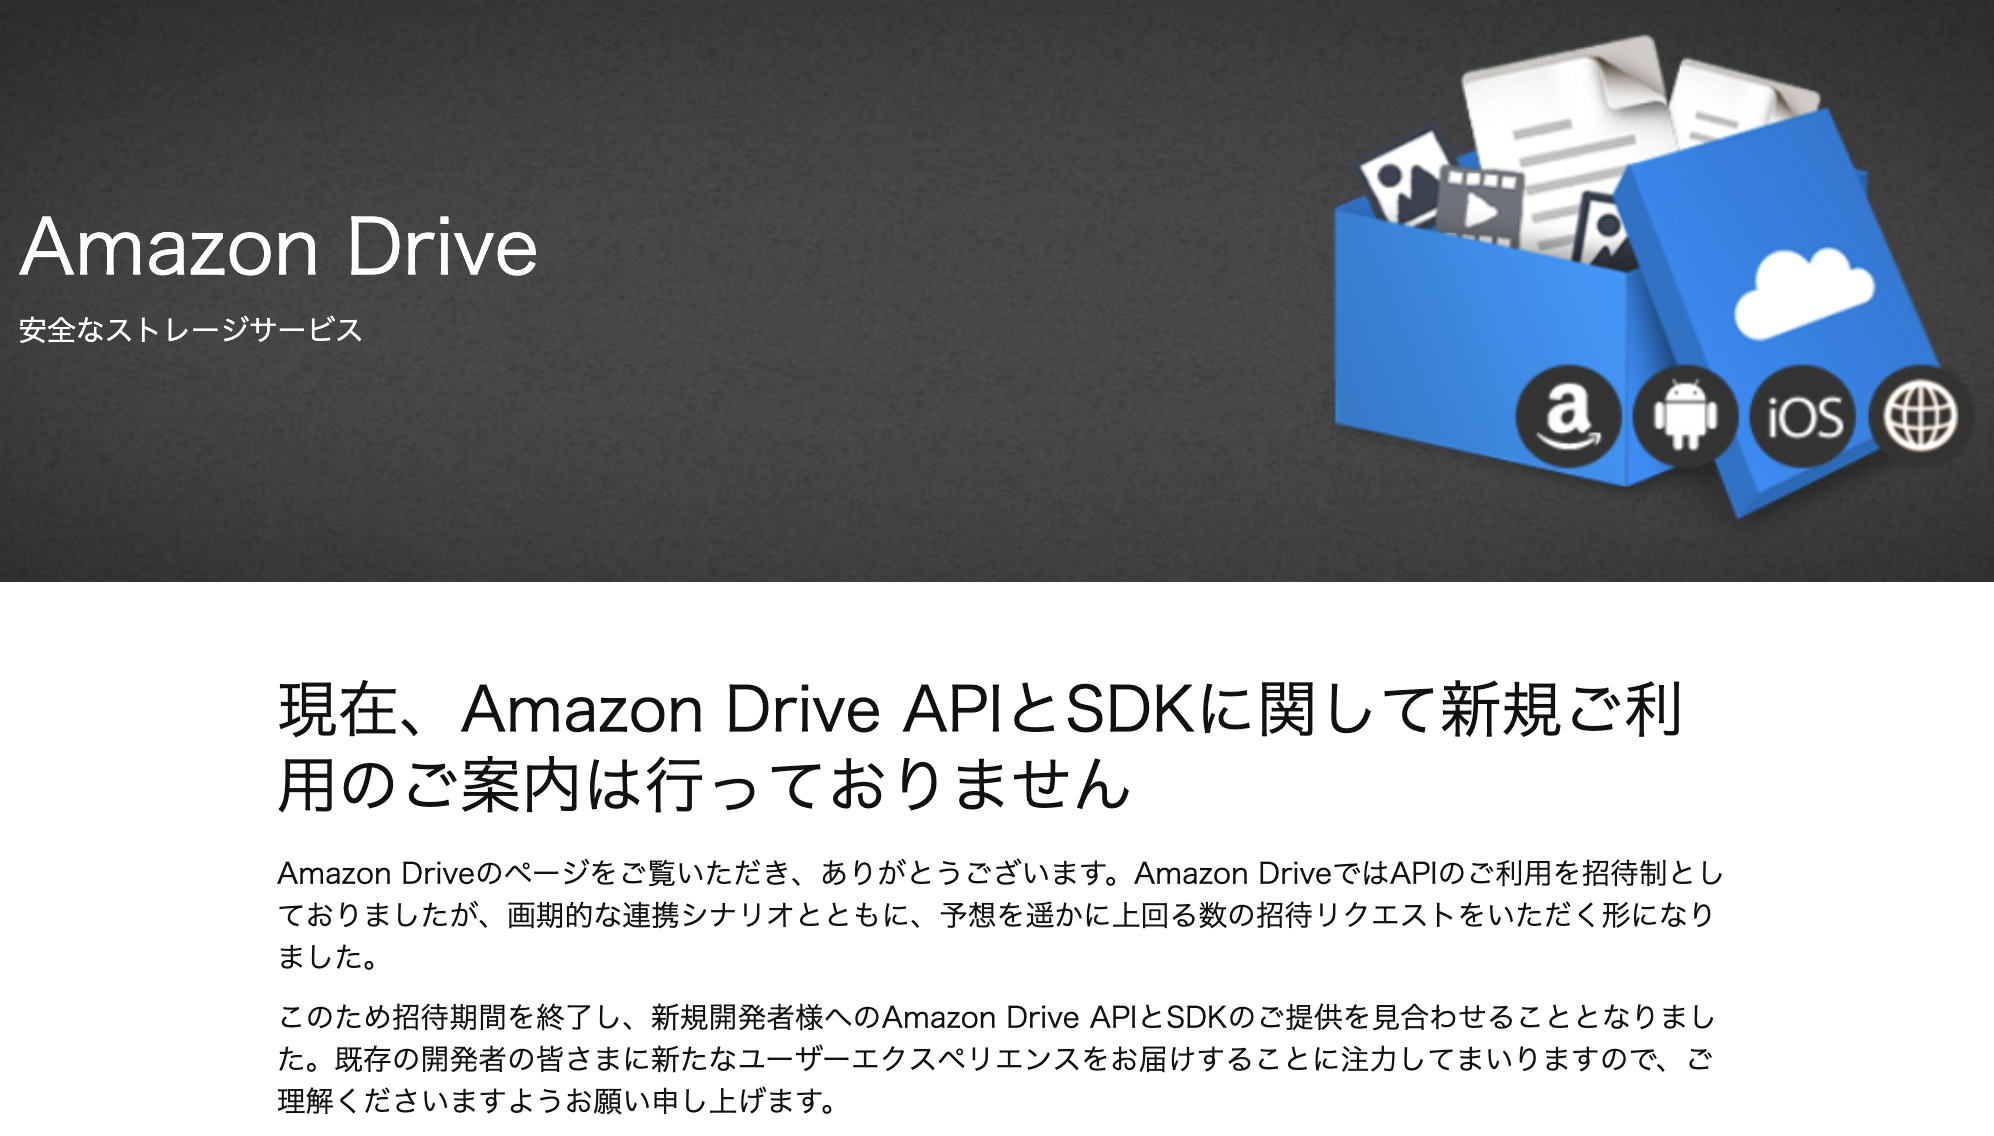 Cliでamazon Drive Photosに画像ファイルをアップロードする Odrive版